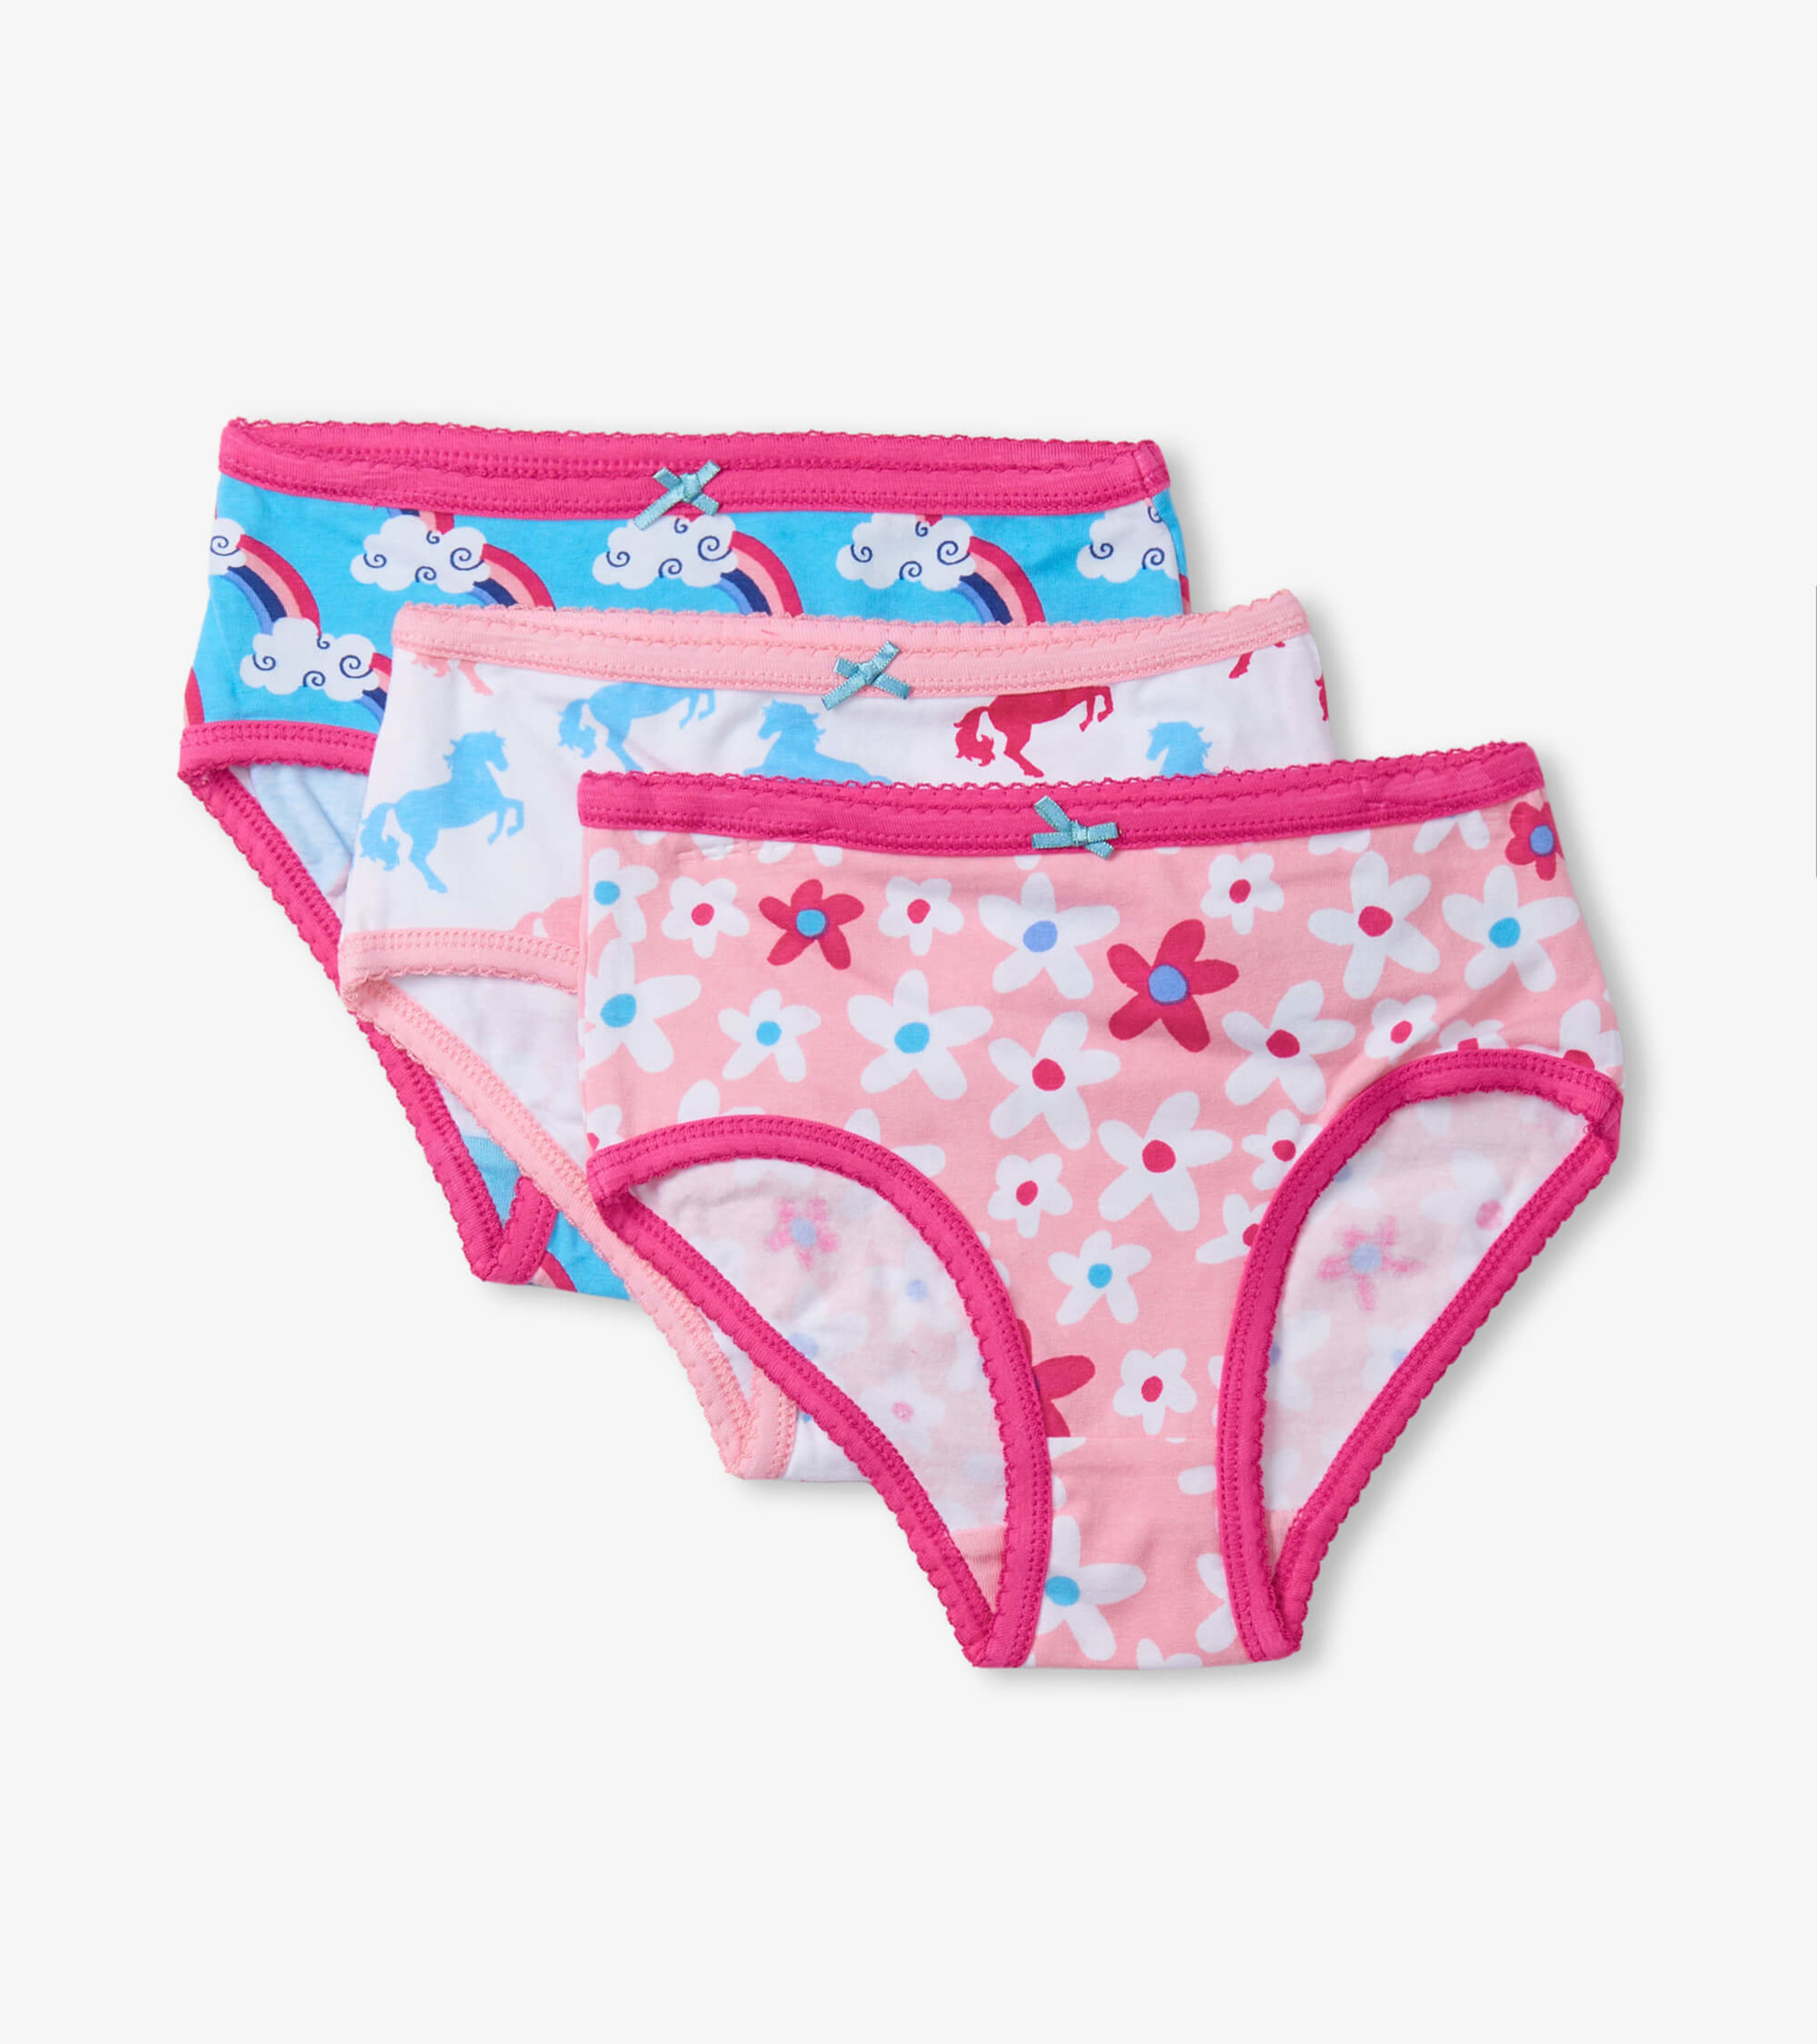 https://cdn.hatley.com/product_images/fun-prints-girls-brief-underwear-3-pack/F00PBK1710_jpg/pdp_zoom.jpg?c=1706562753&locale=us_en